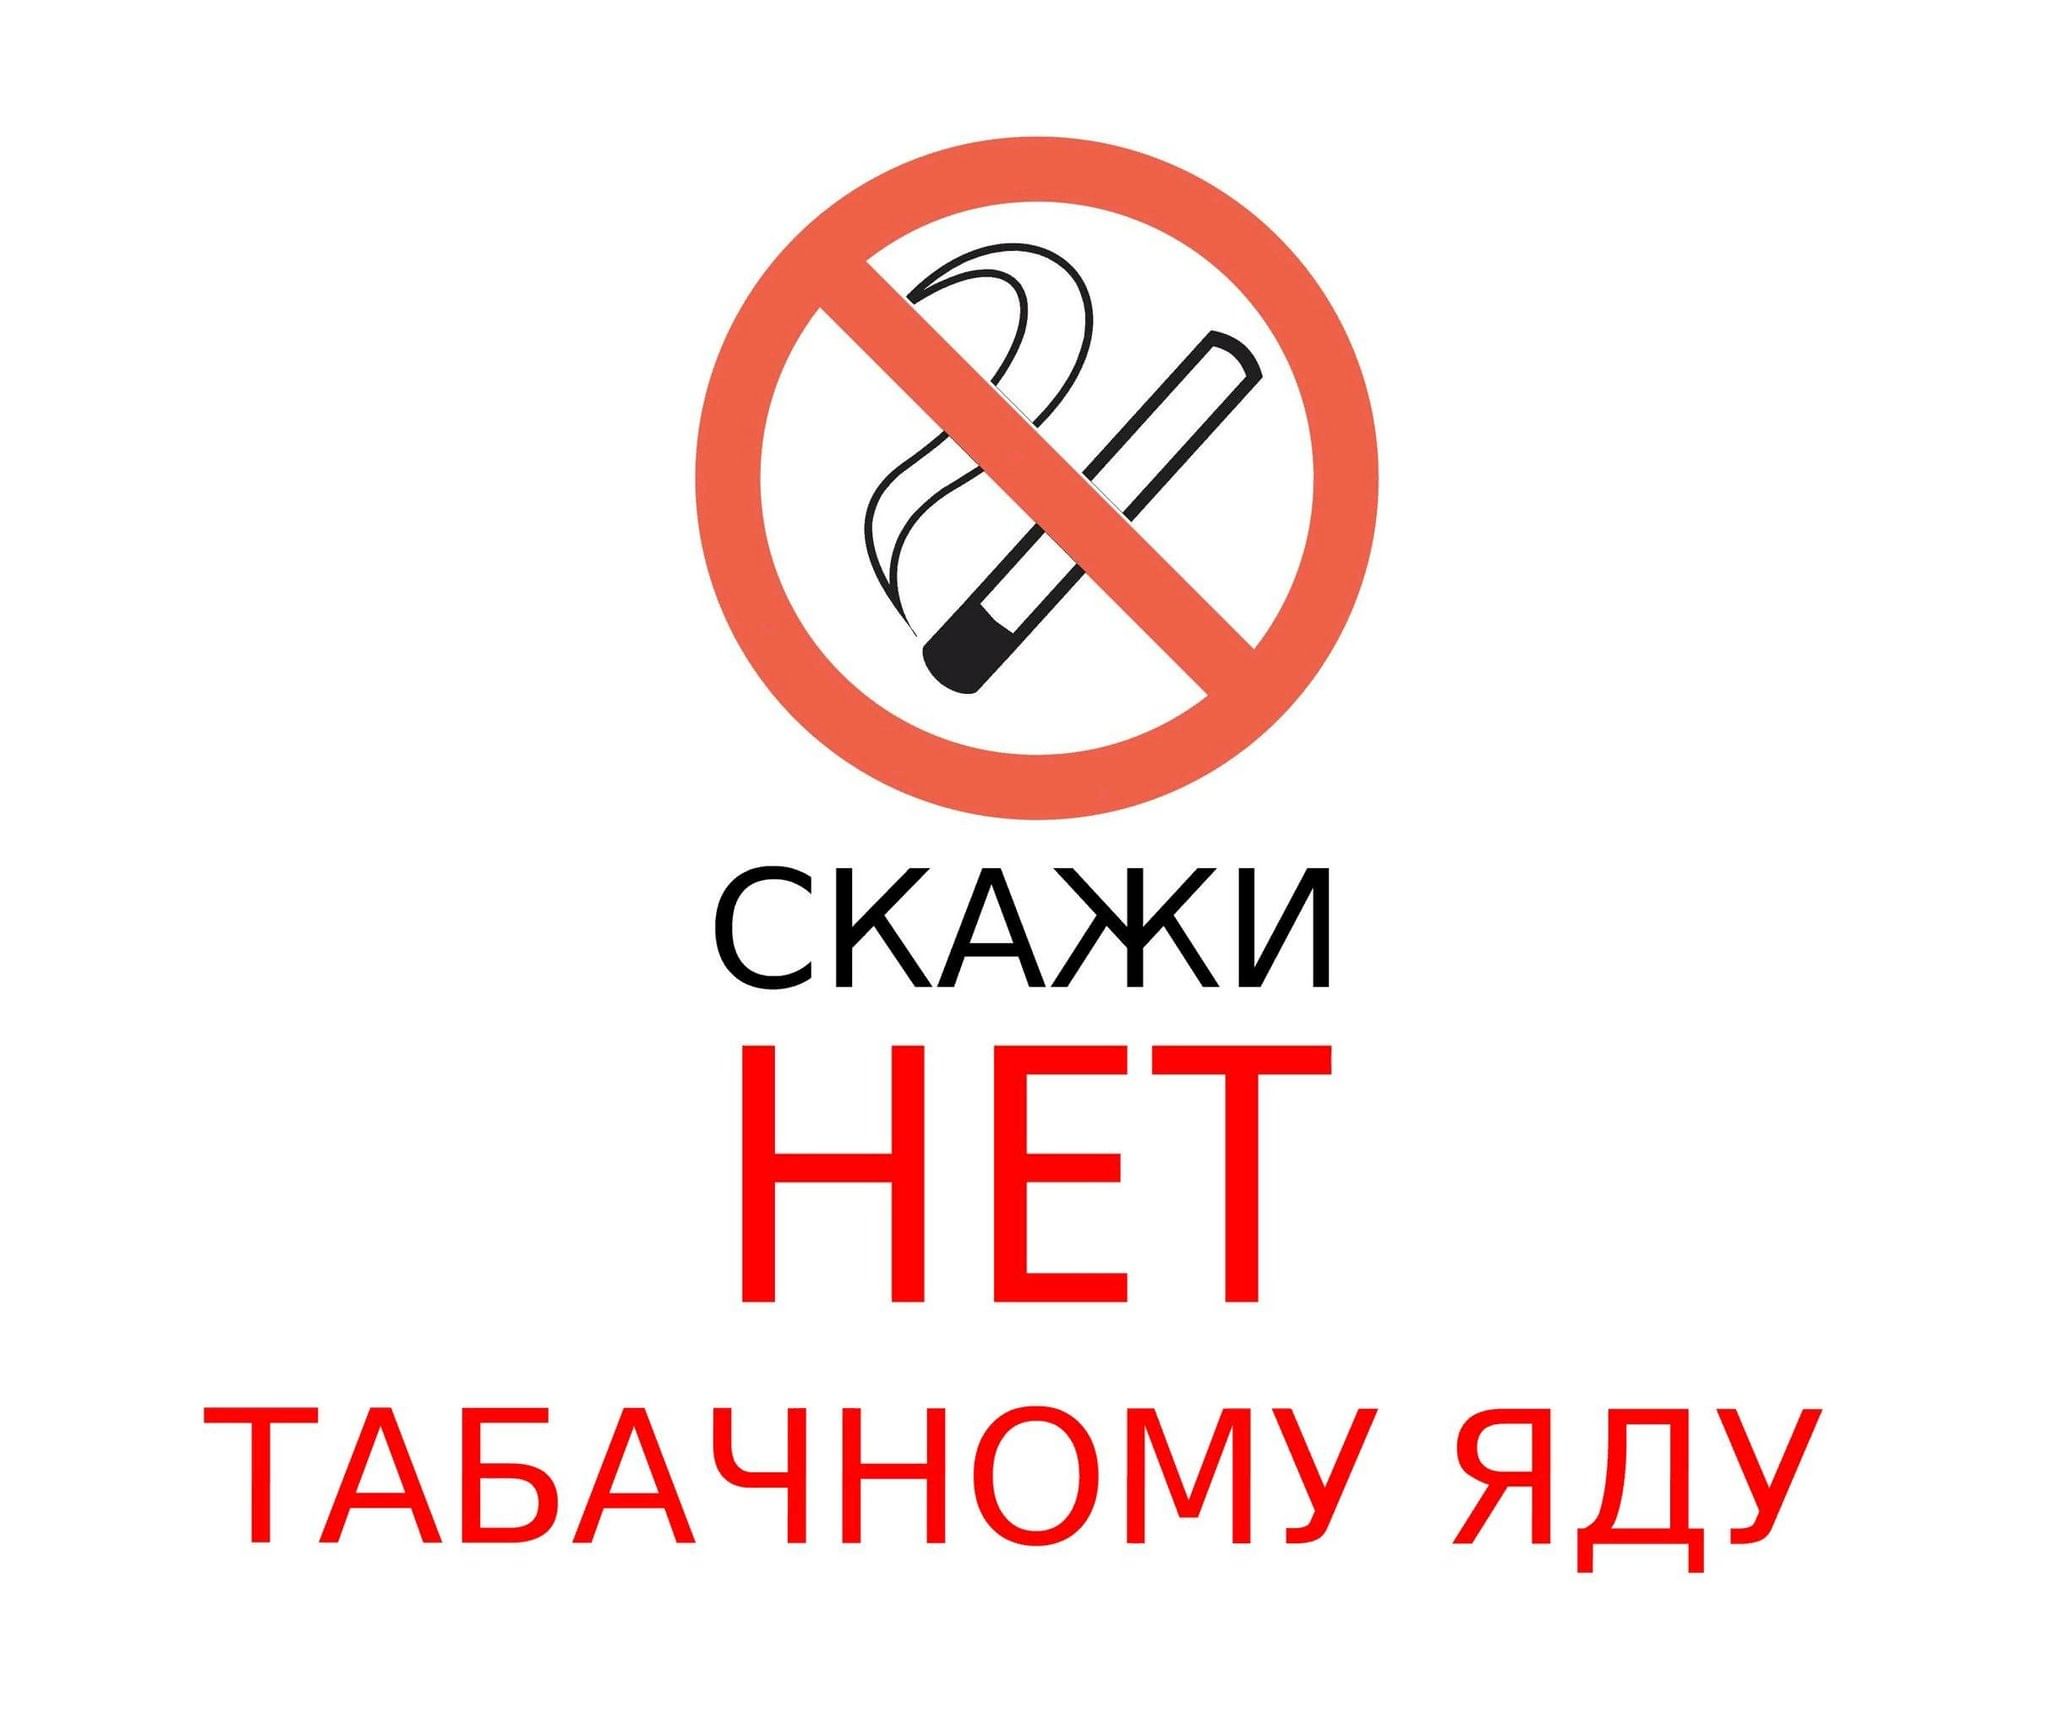 Против курения